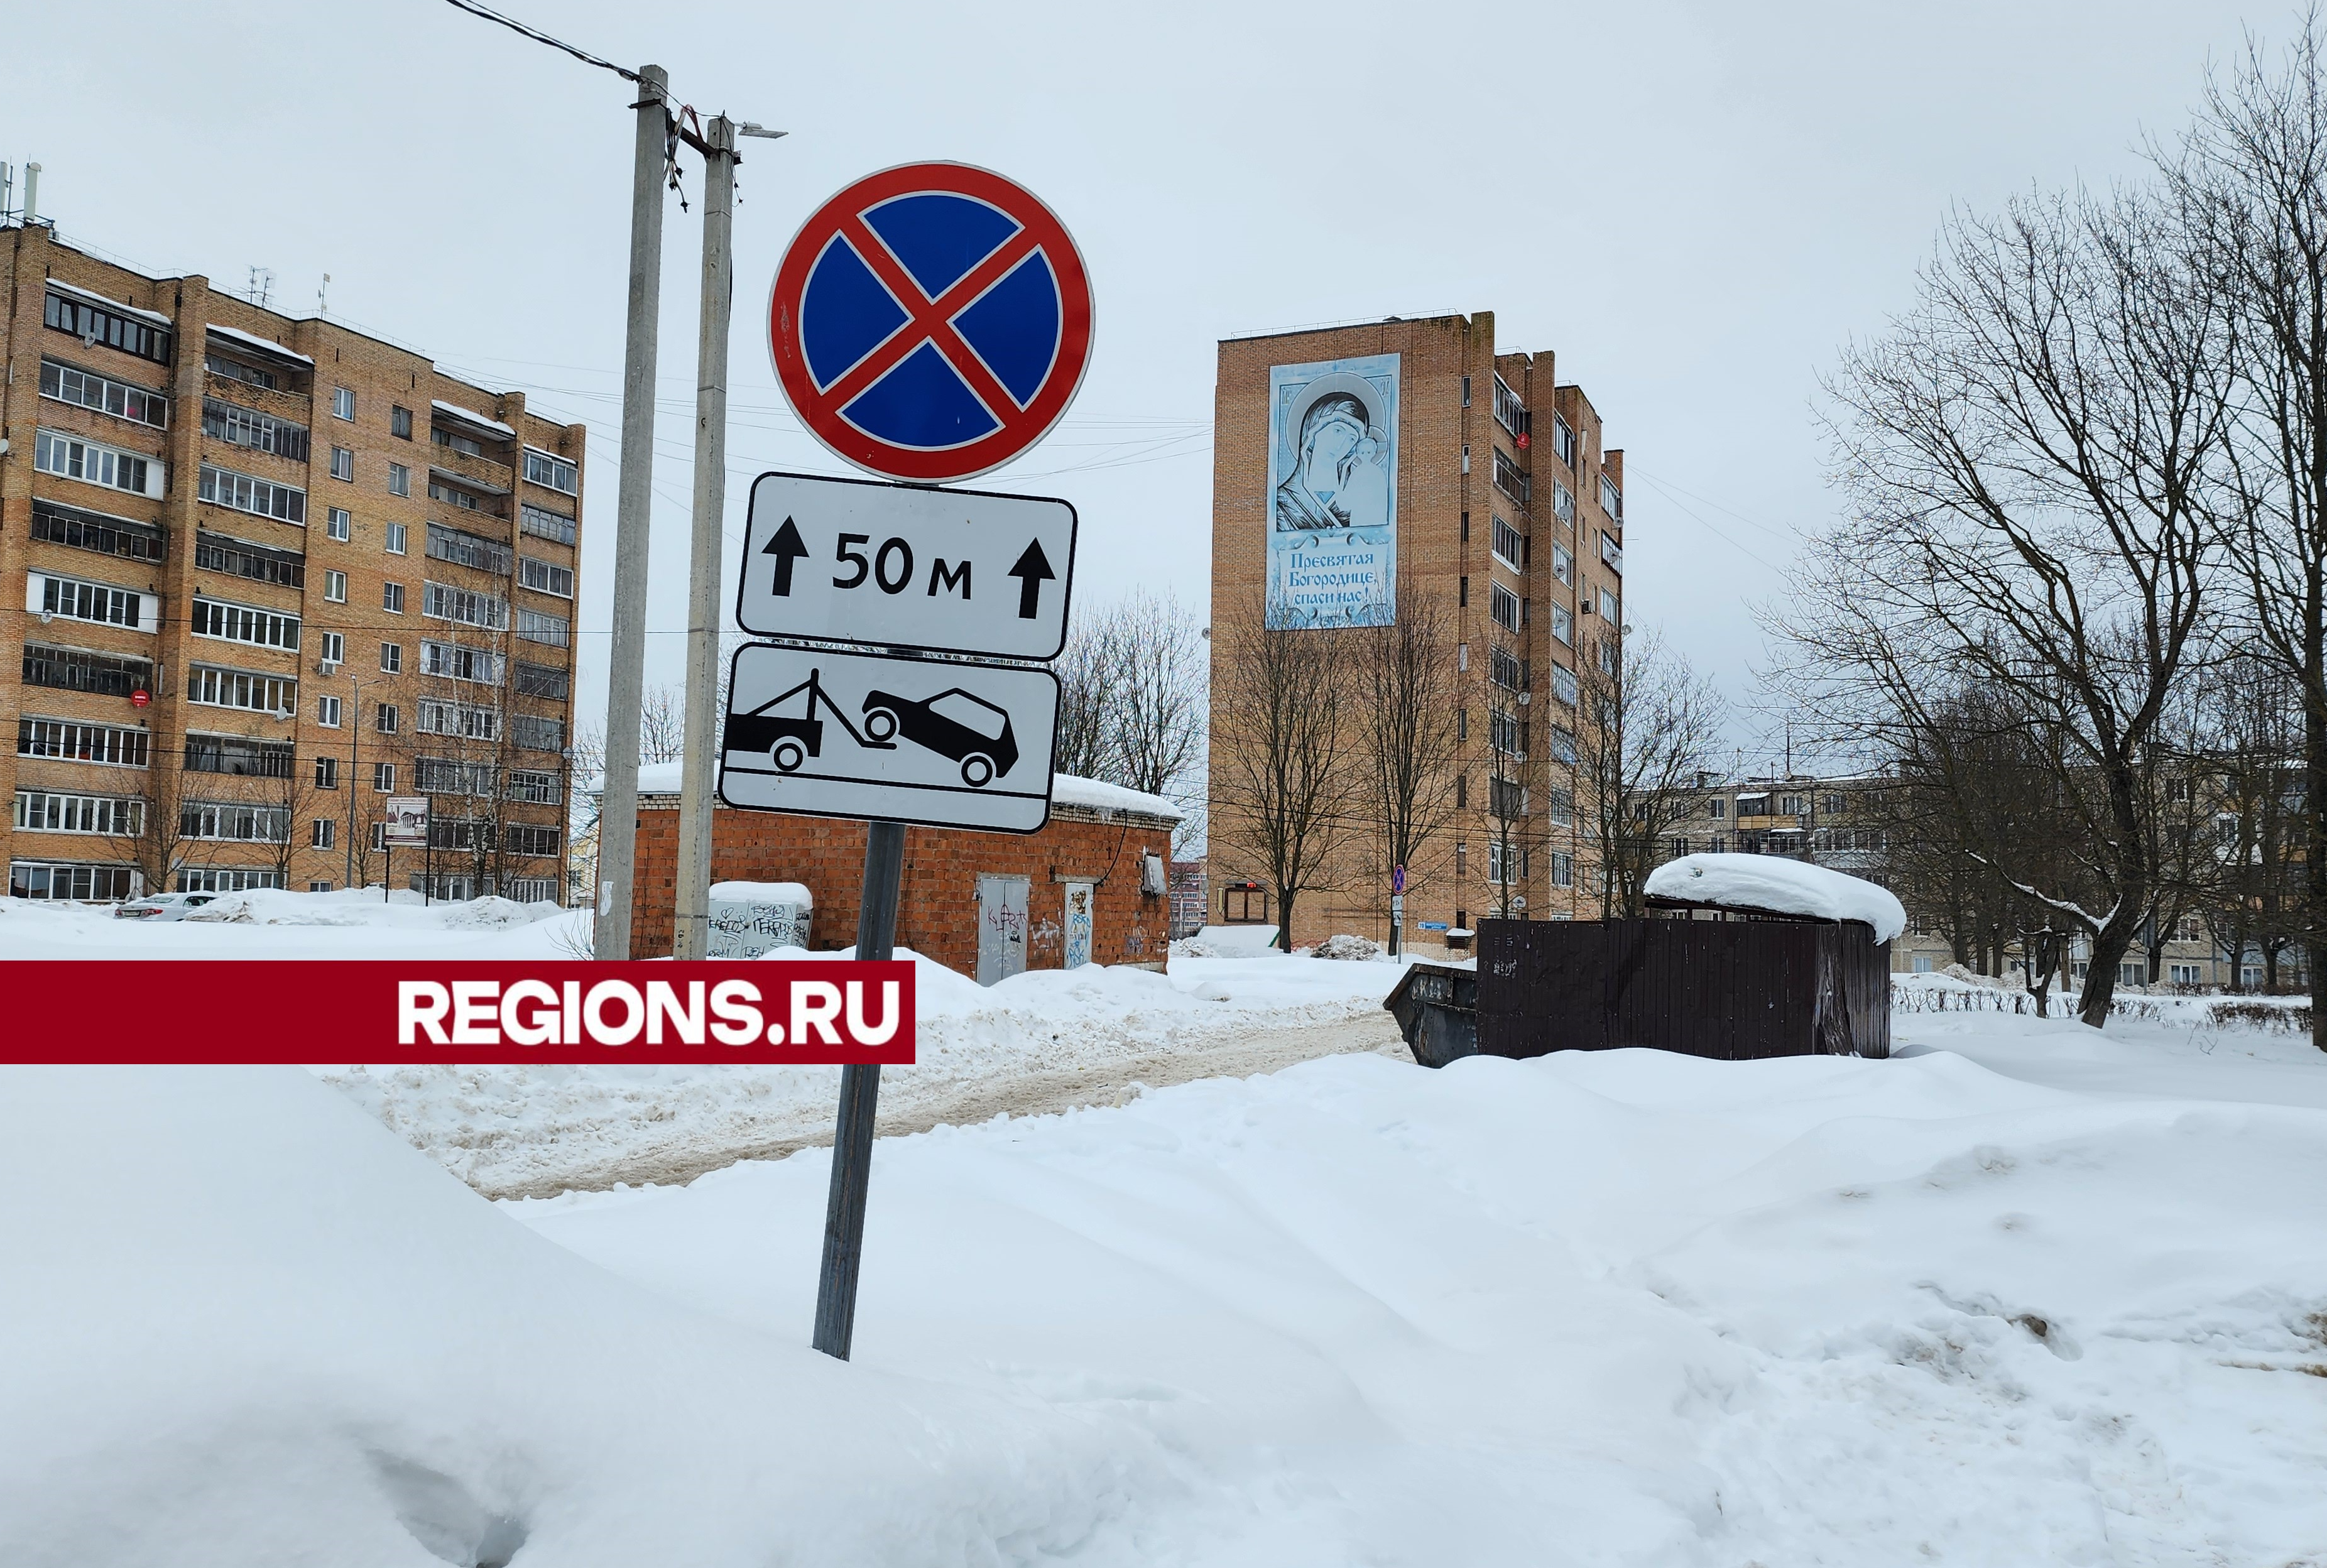 Автомобилистам Глебовского запретили останавливаться у контейнерной площадки на улице Микрорайон